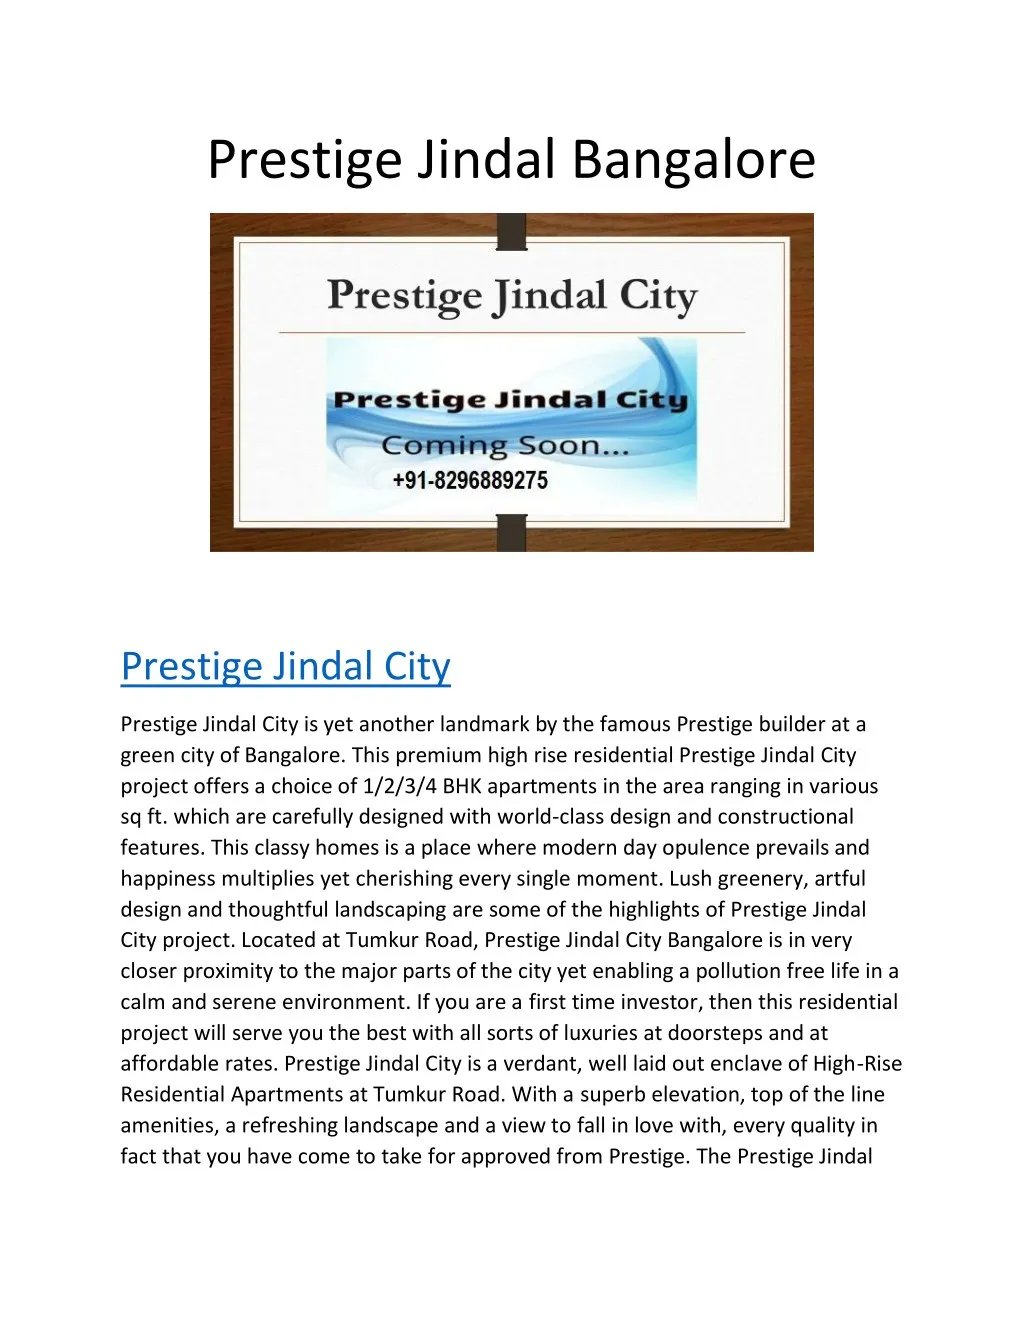 prestige jindal bangalore